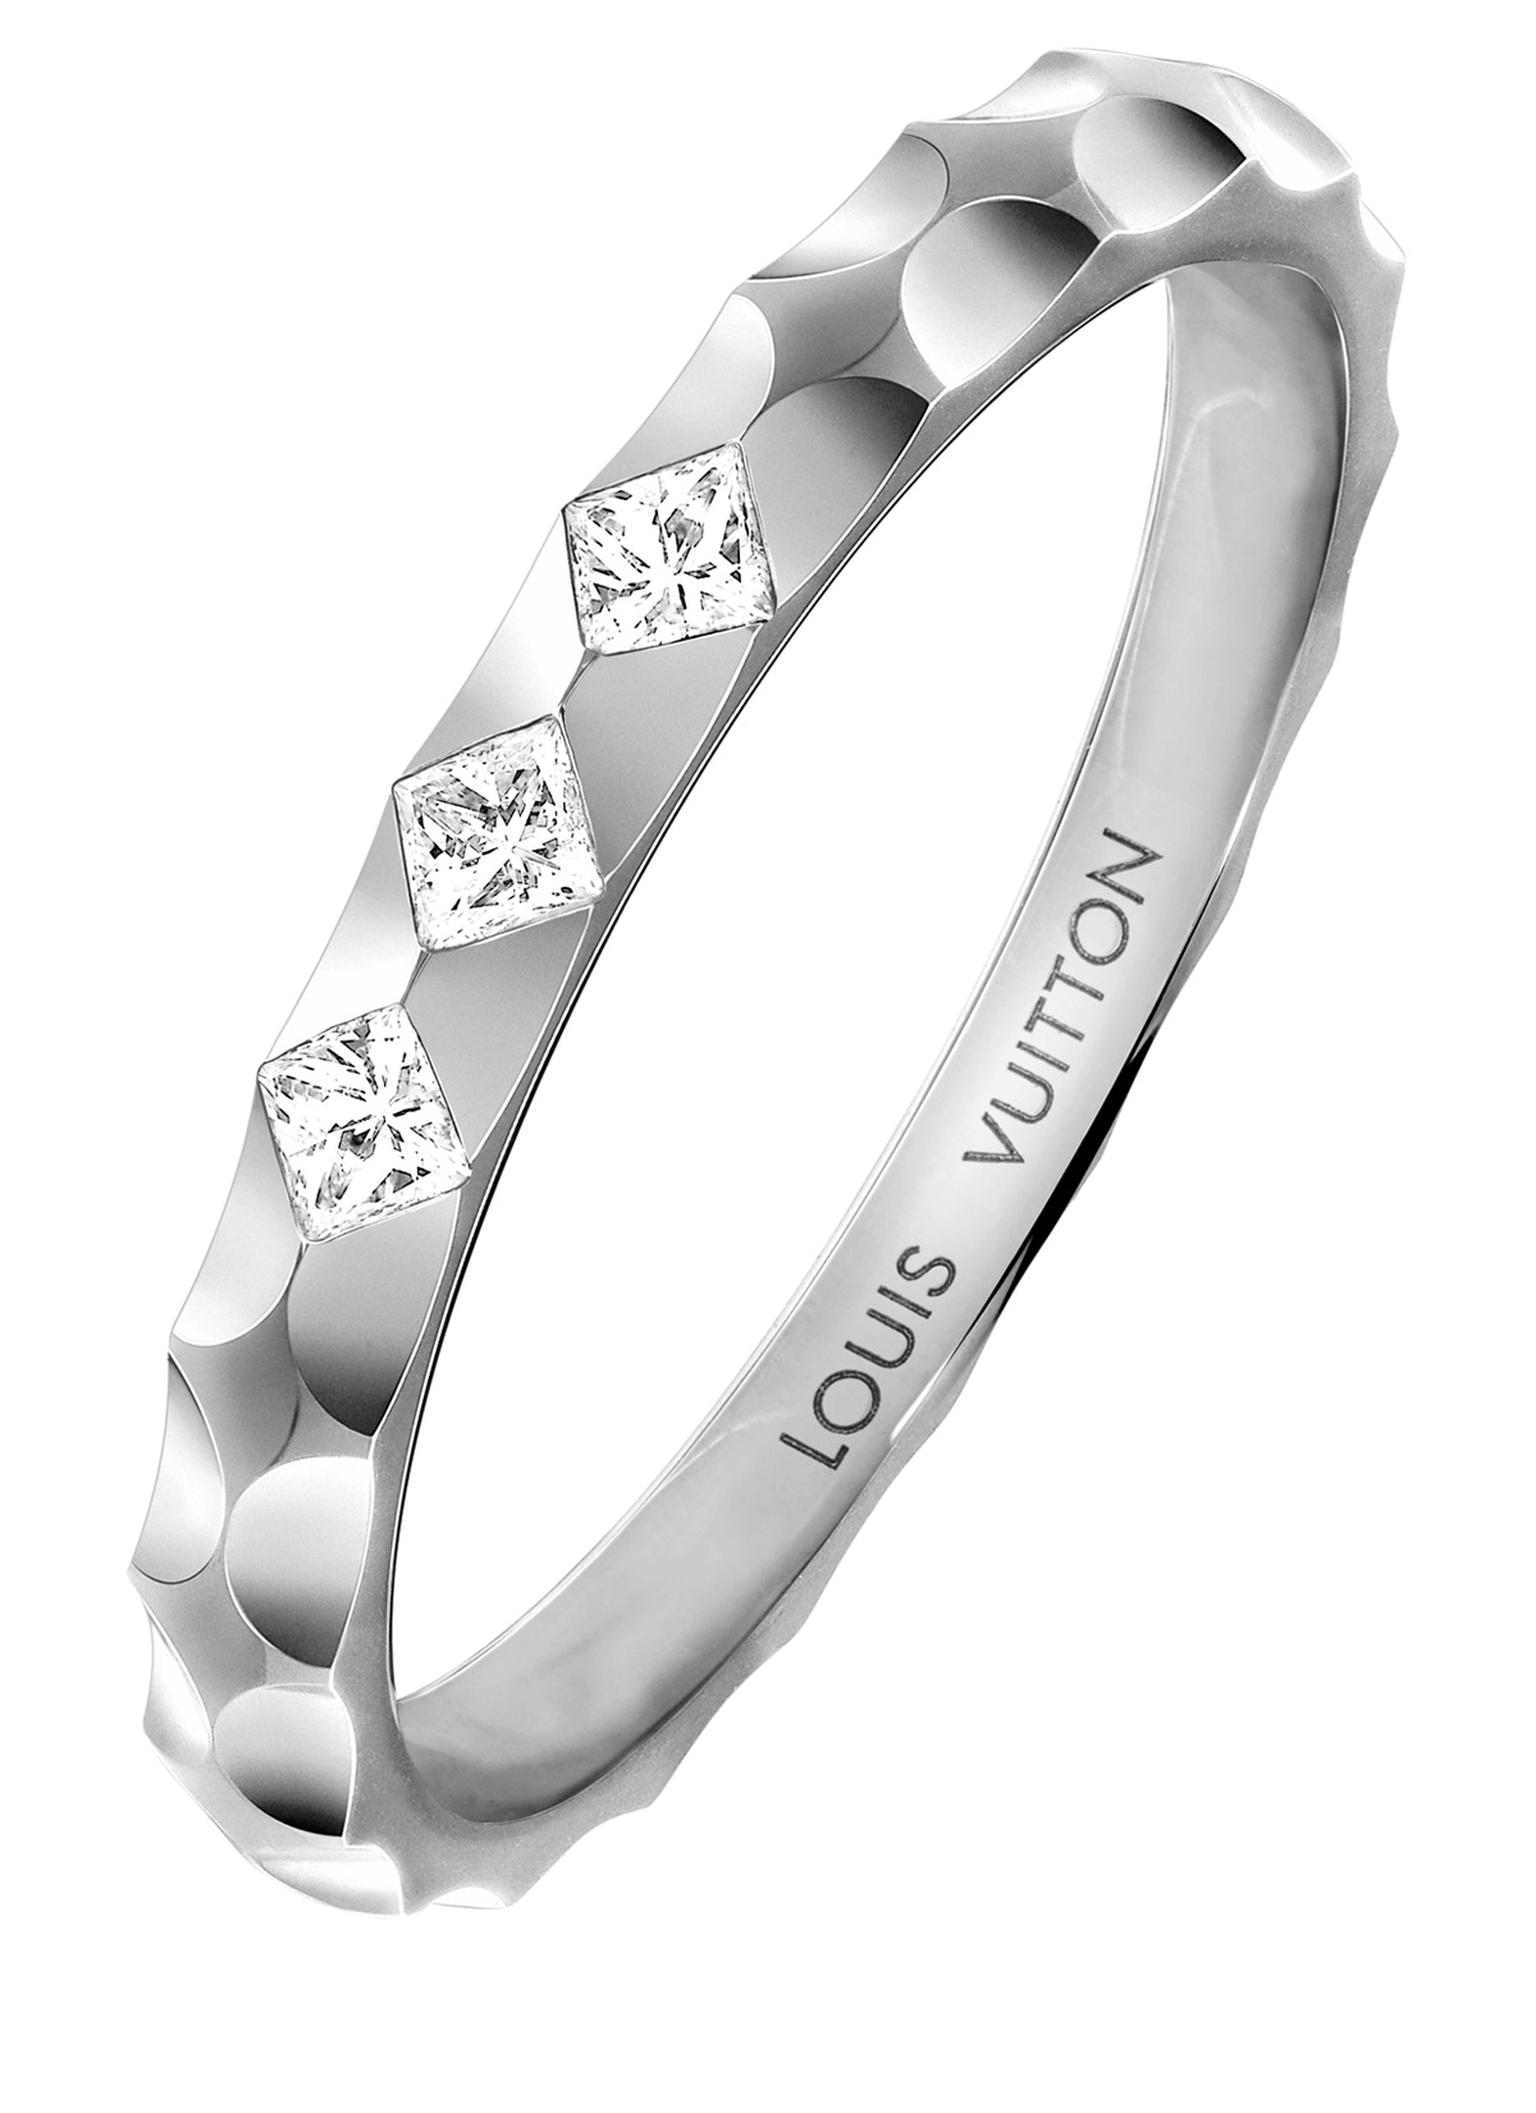 Louis Vuitton Monogram Infini wedding ring_20130830_Zoom